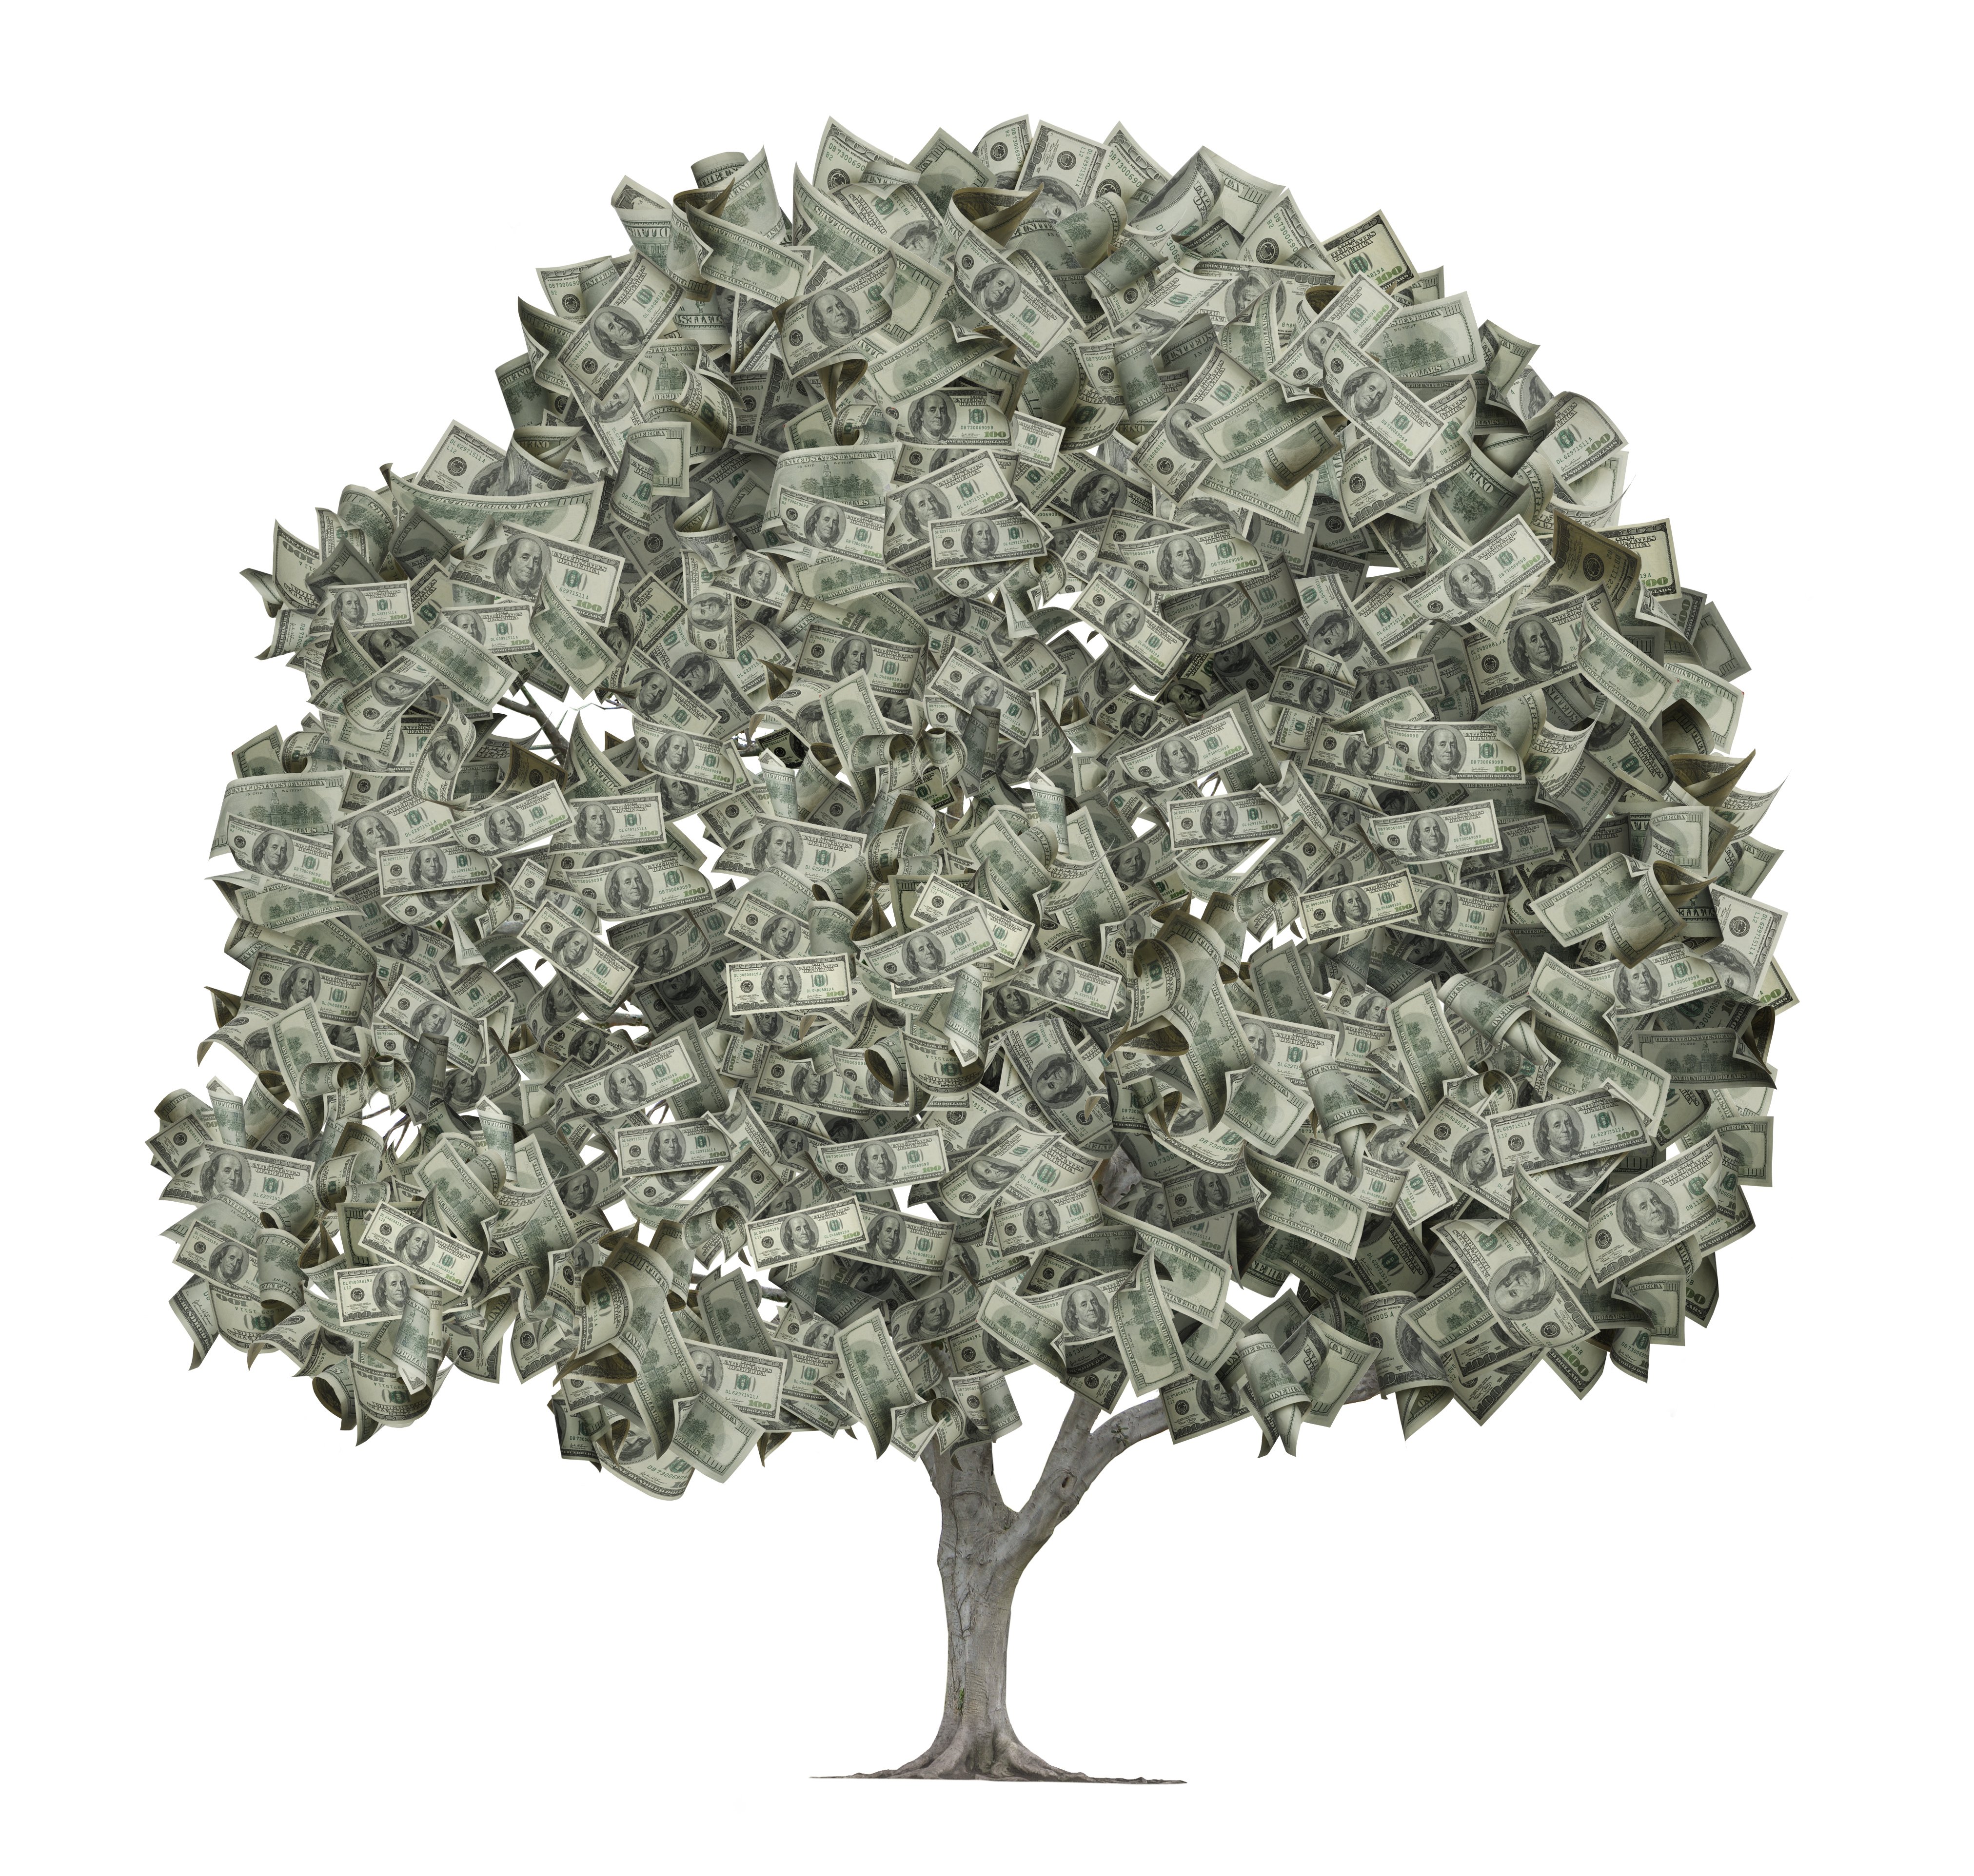 Иллюстрация с изображением денежного дерева